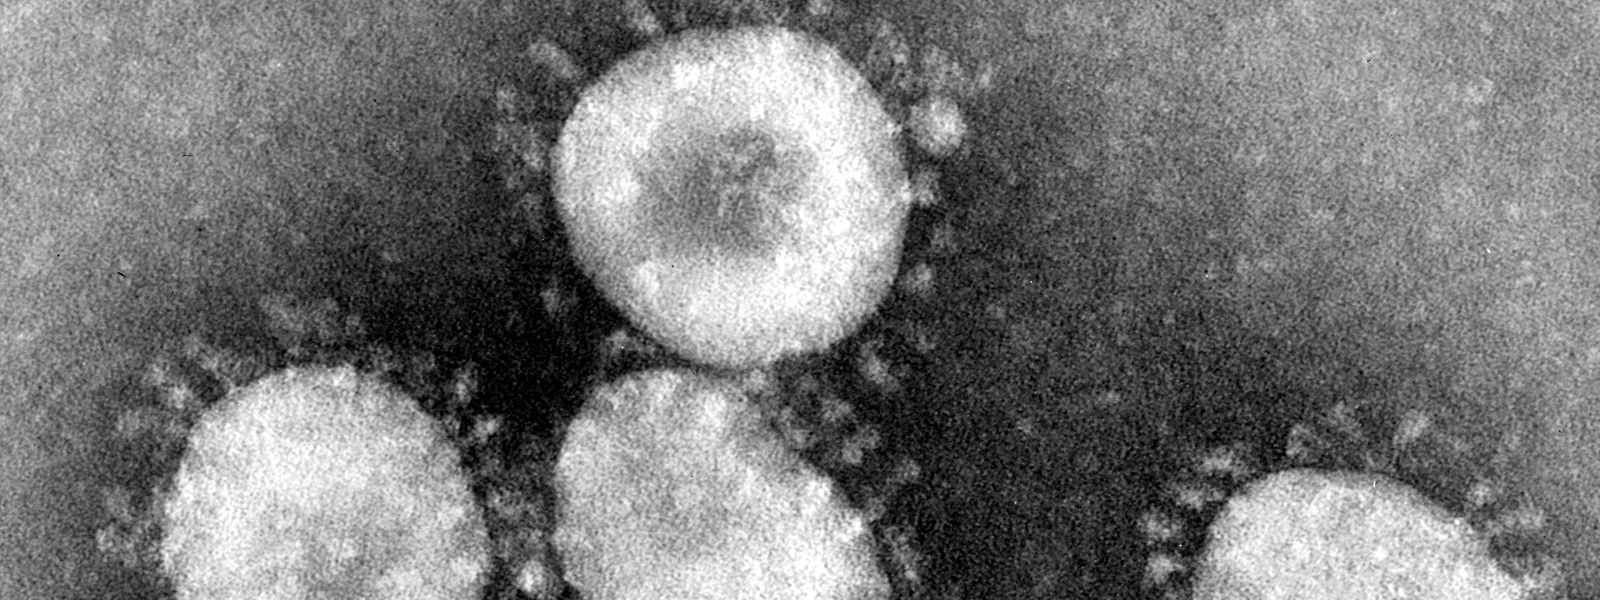 Dieses Handout des amerikanischen Centers for Disease Control (CDC) zeigt einen Coronavirus unter dem Mikroskop.